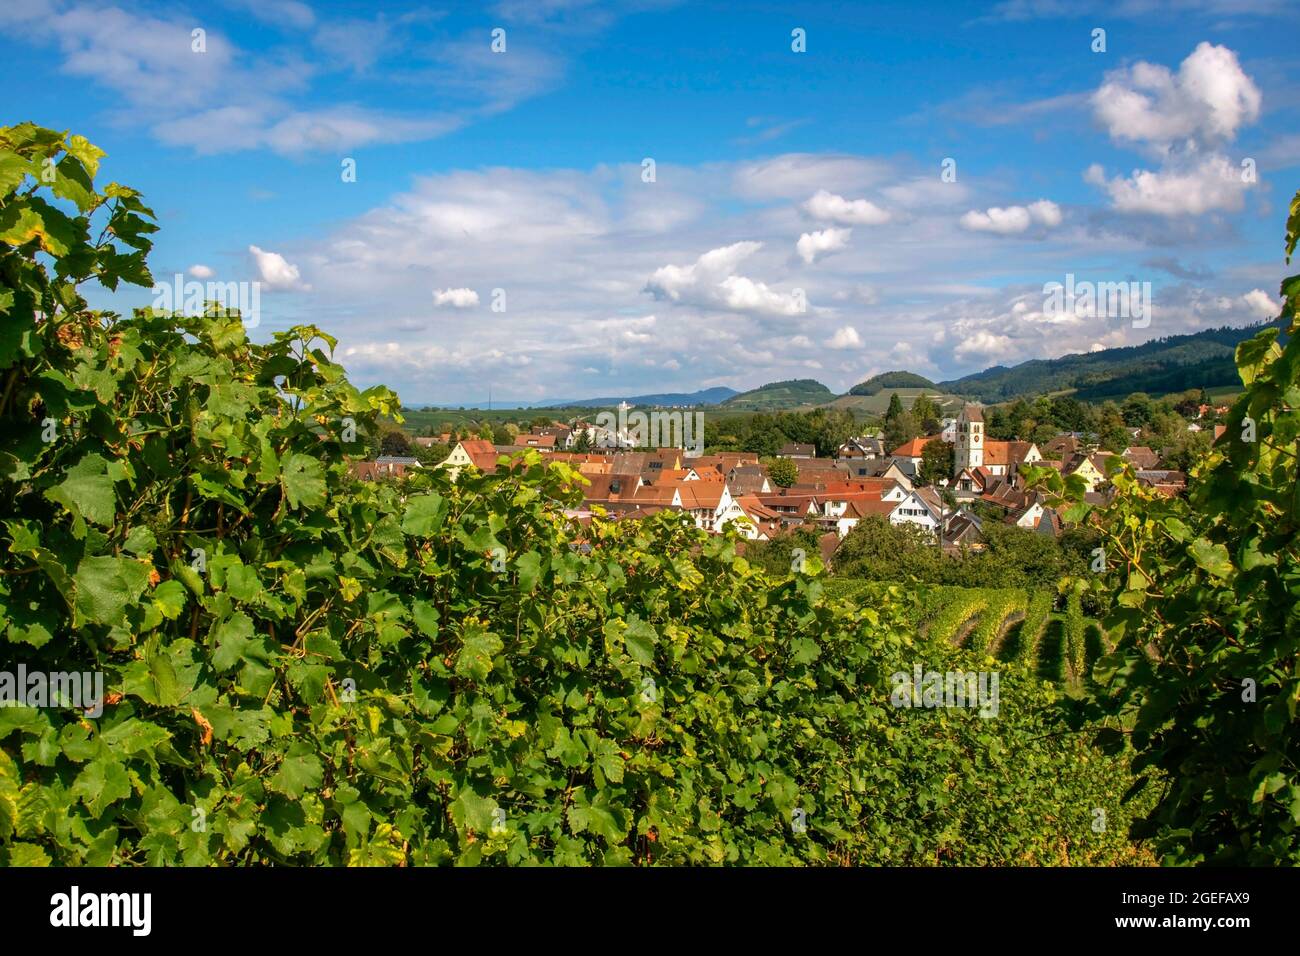 The wine village Britzingen in Markgraeflerland, Black Forest, Baden-Wuerttemberg, Germany Stock Photo